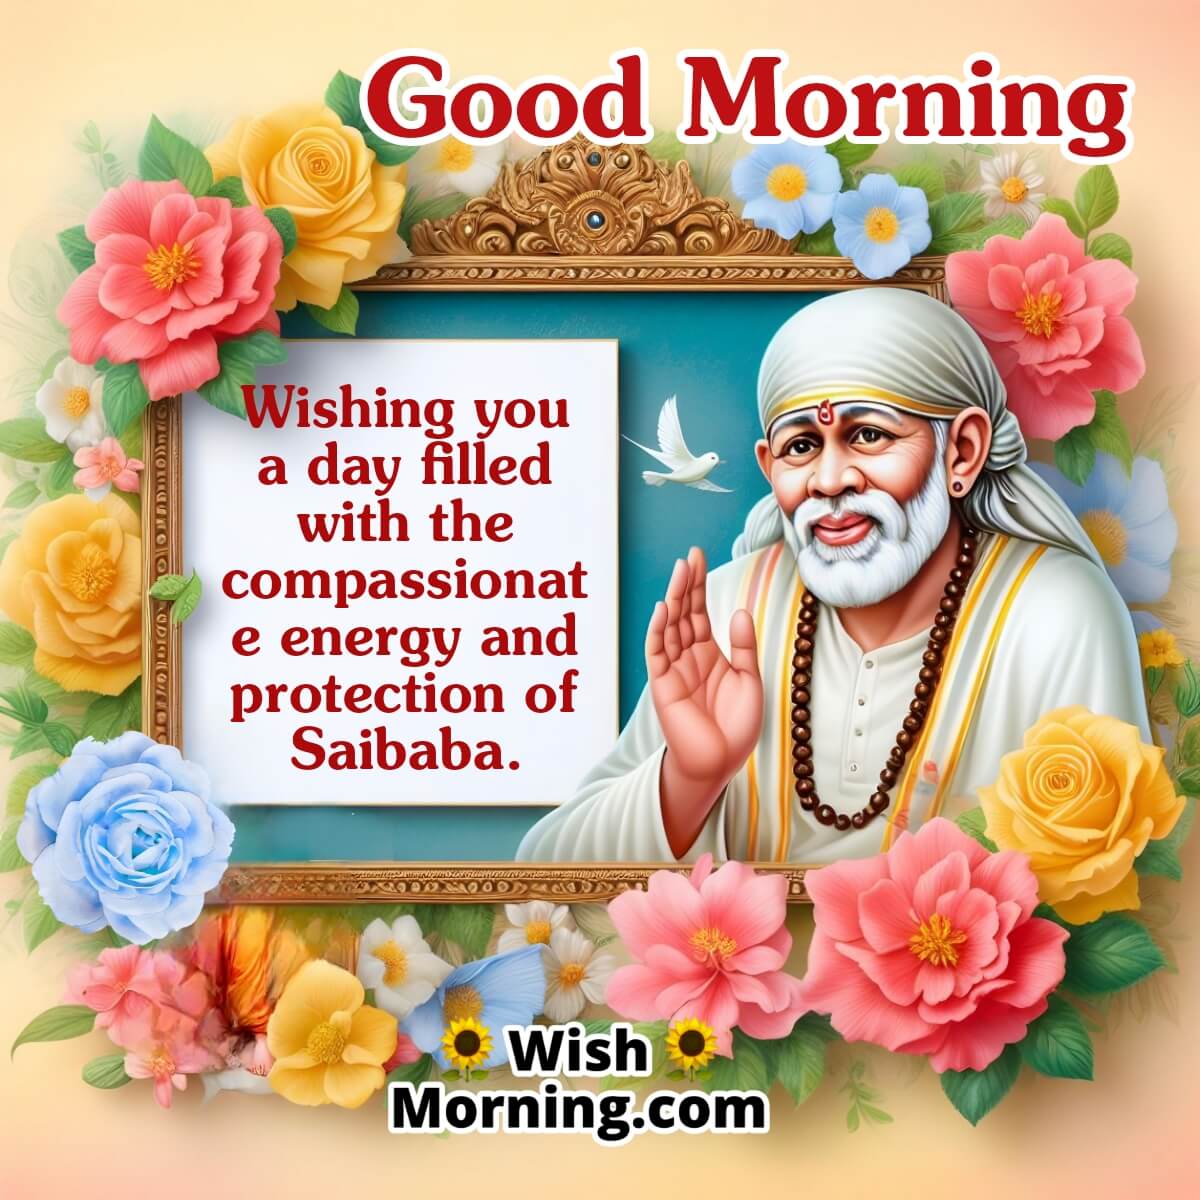 Good Morning Saibaba Image